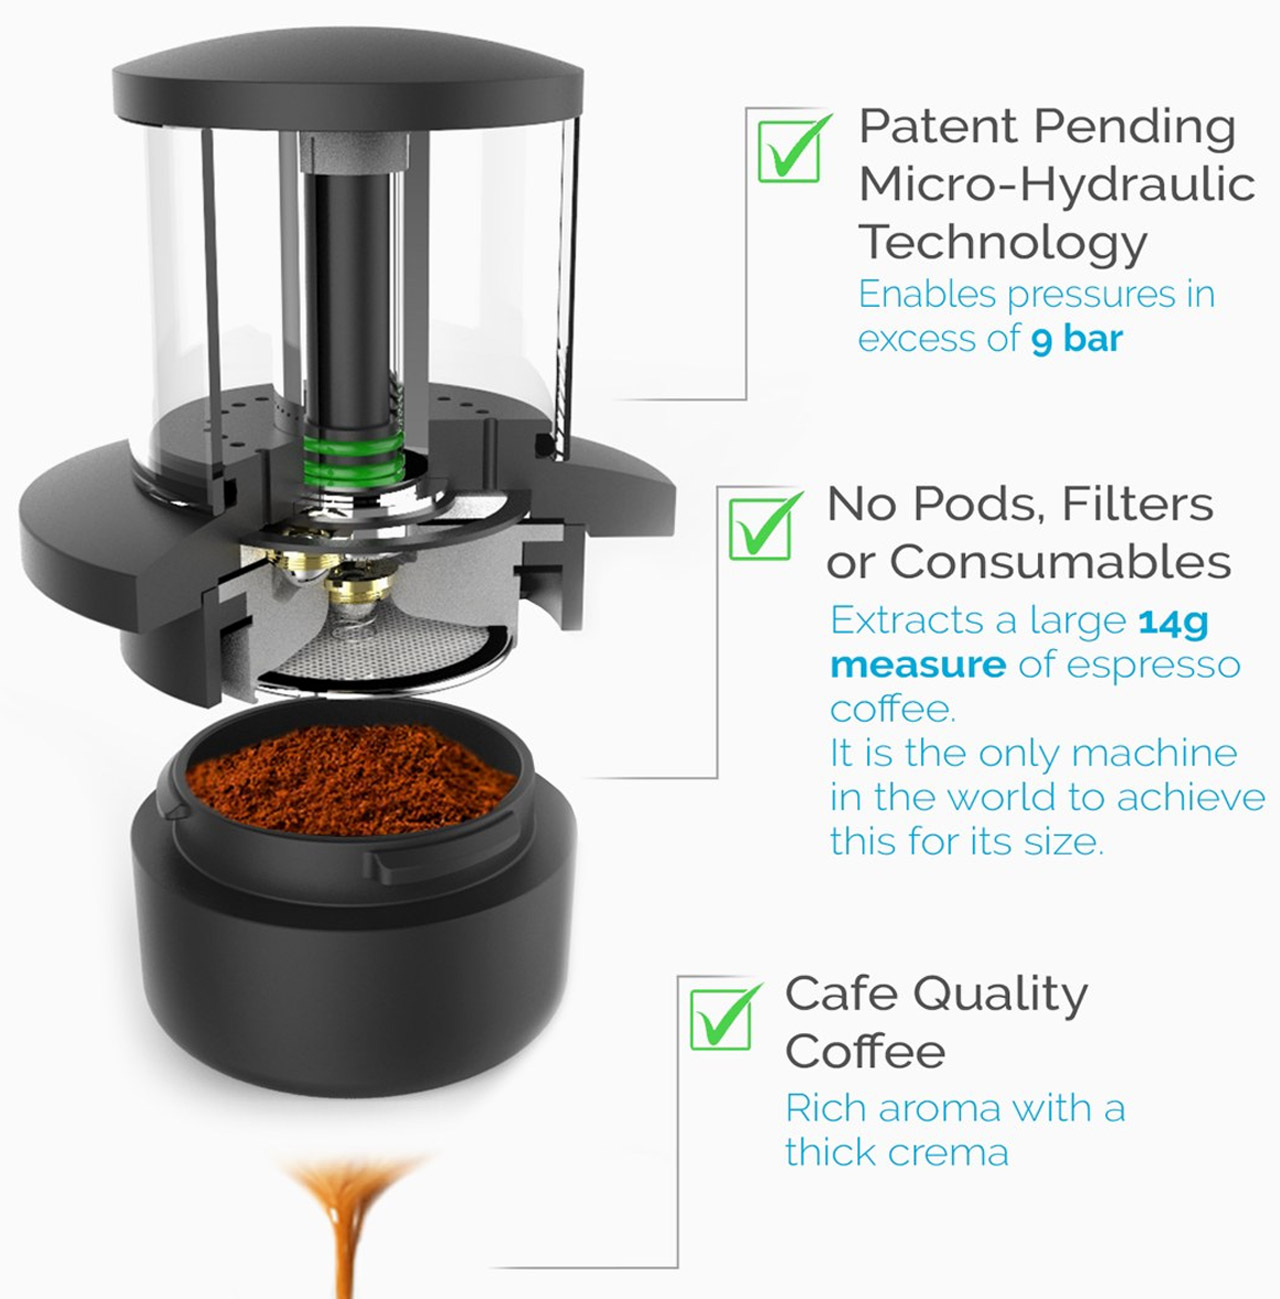 https://www.yankodesign.com/images/design_news/2021/07/tiny-coffee-makers-ds/tiny-coffee_maker_ds_yanko-design-02.jpg